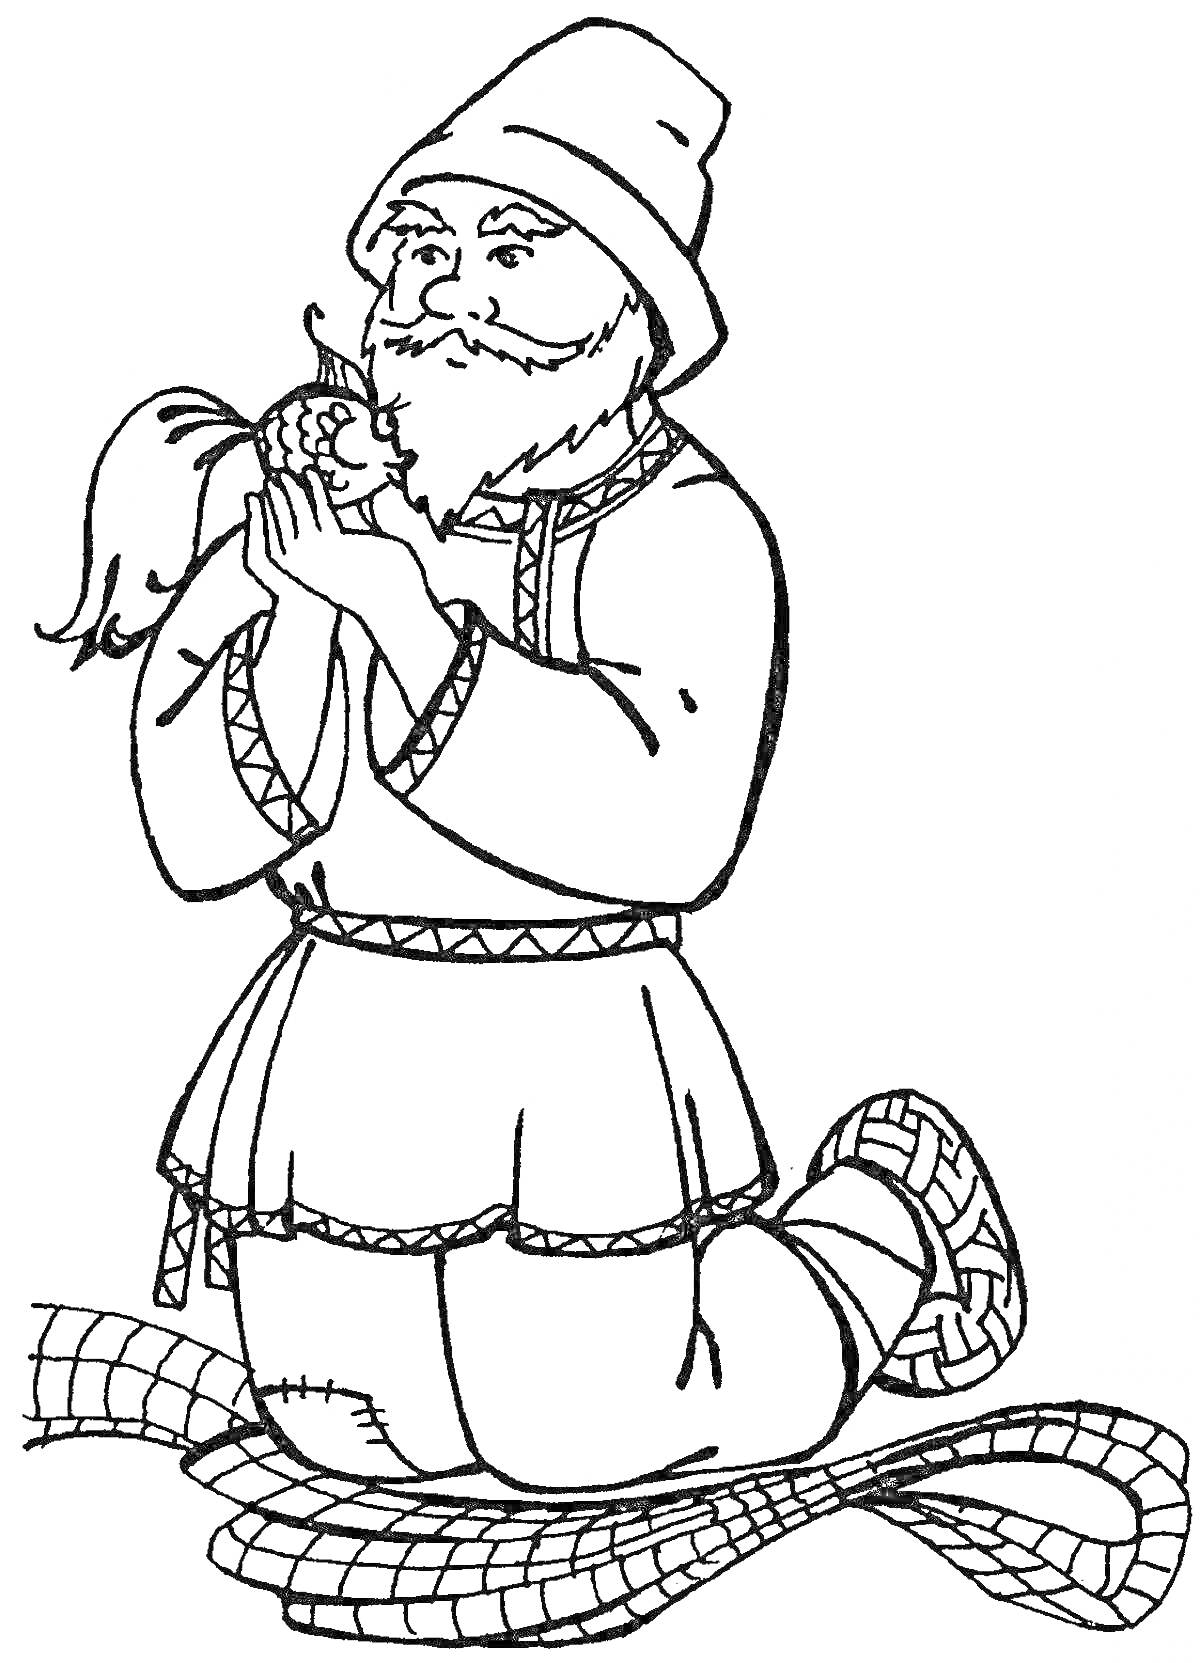 Раскраска Старик с золотой рыбкой из сказки Пушкина, сидящий на коленях